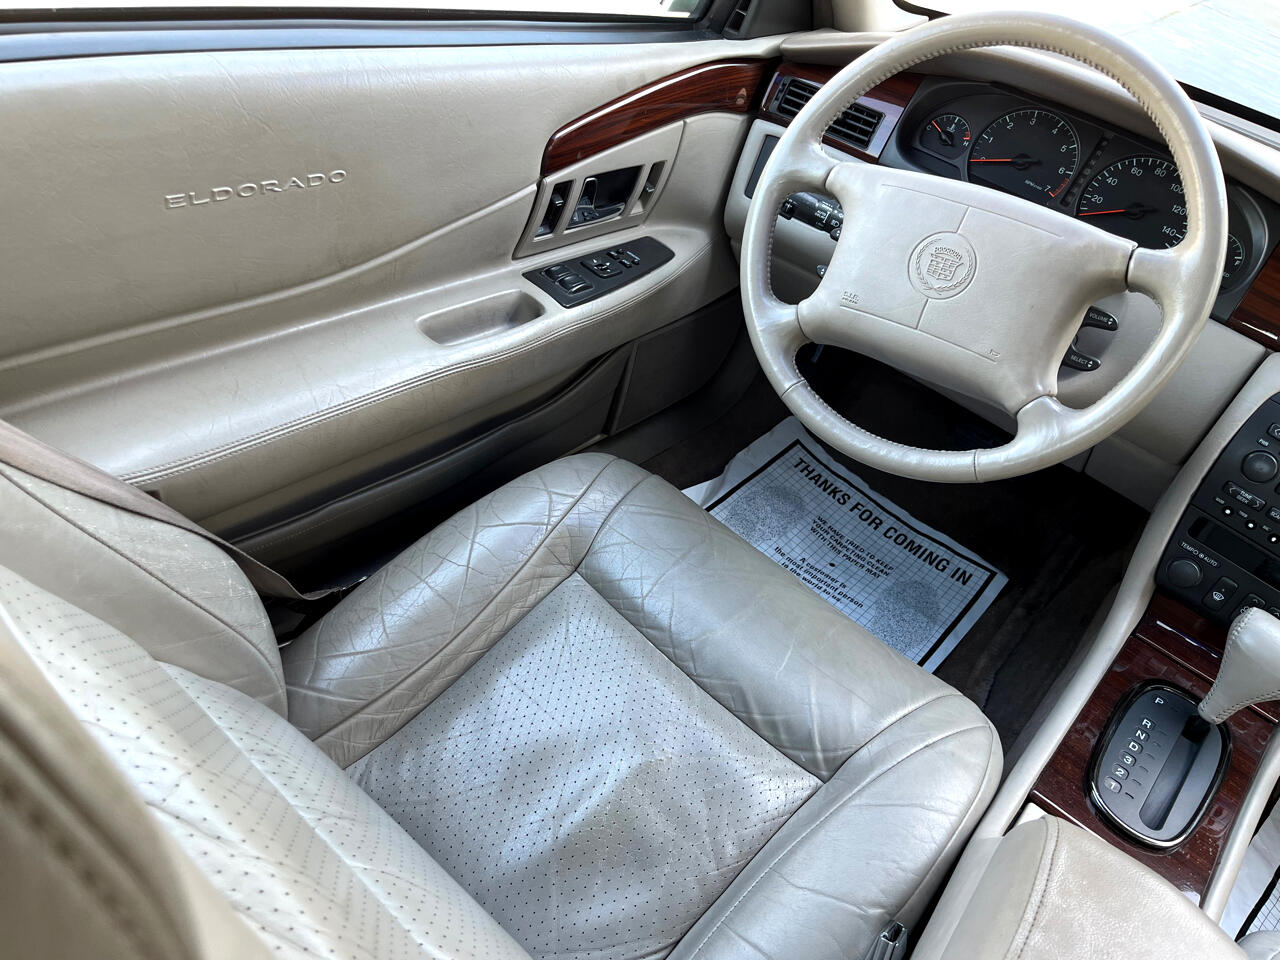 1996 Cadillac Eldorado 2dr Touring Cpe 22